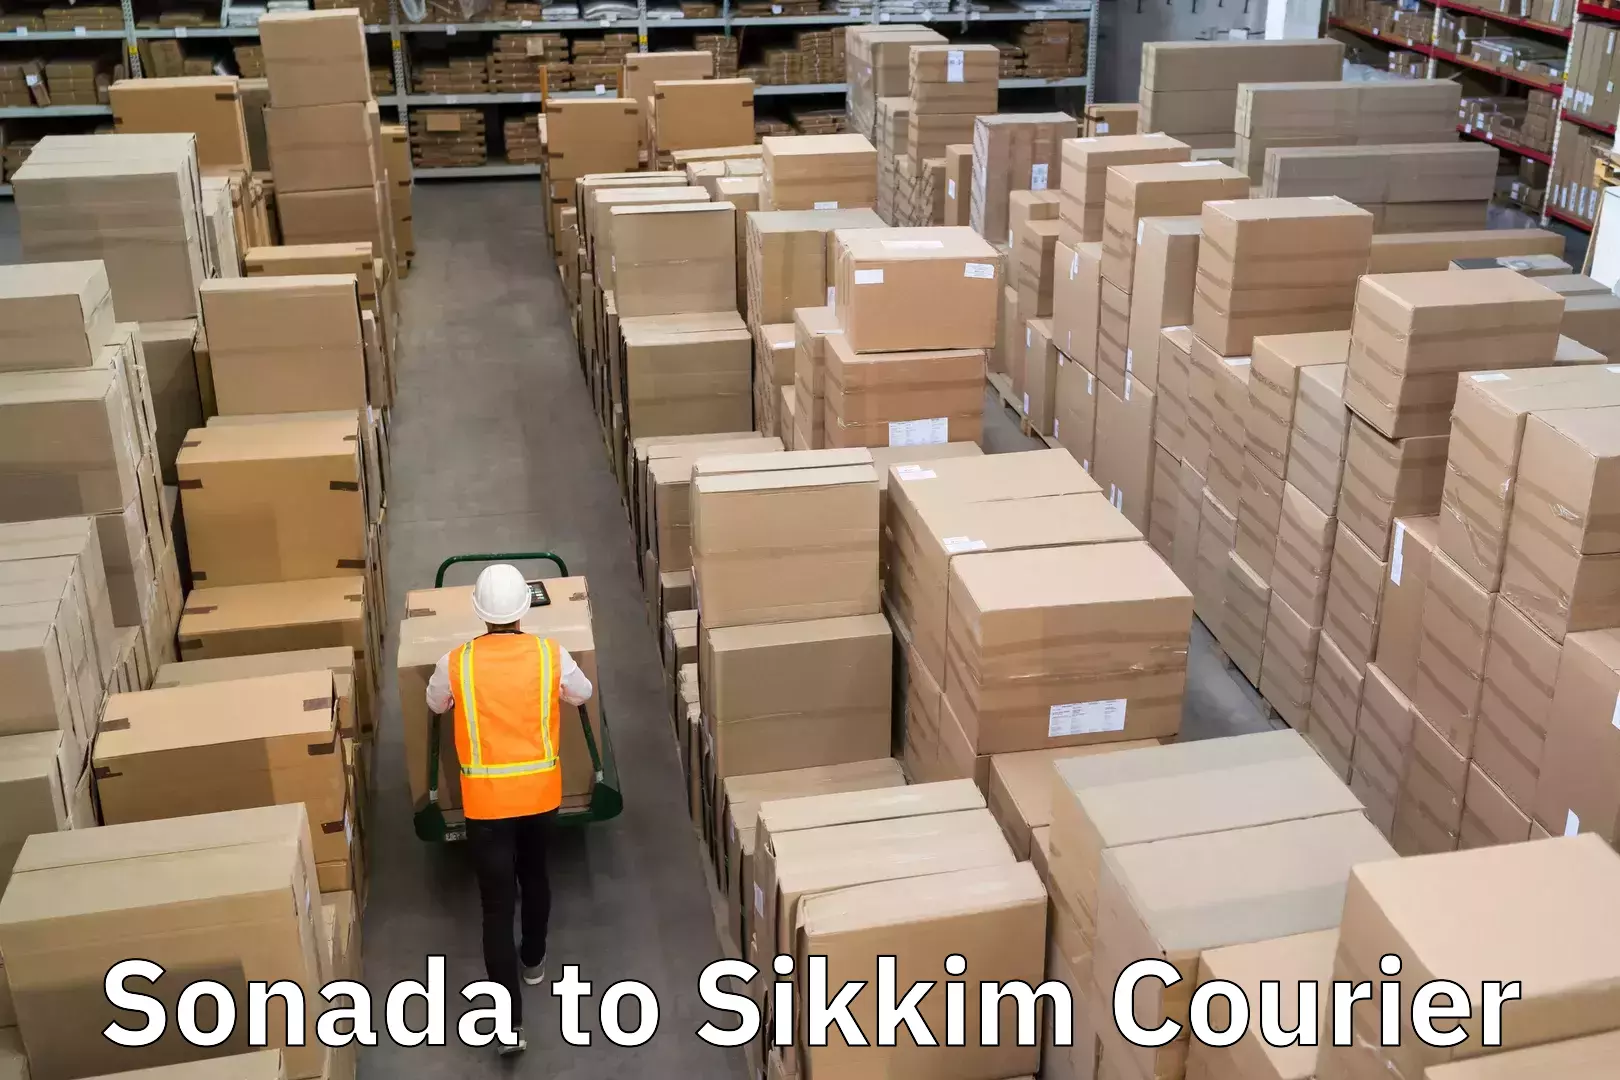 Courier service comparison Sonada to Sikkim